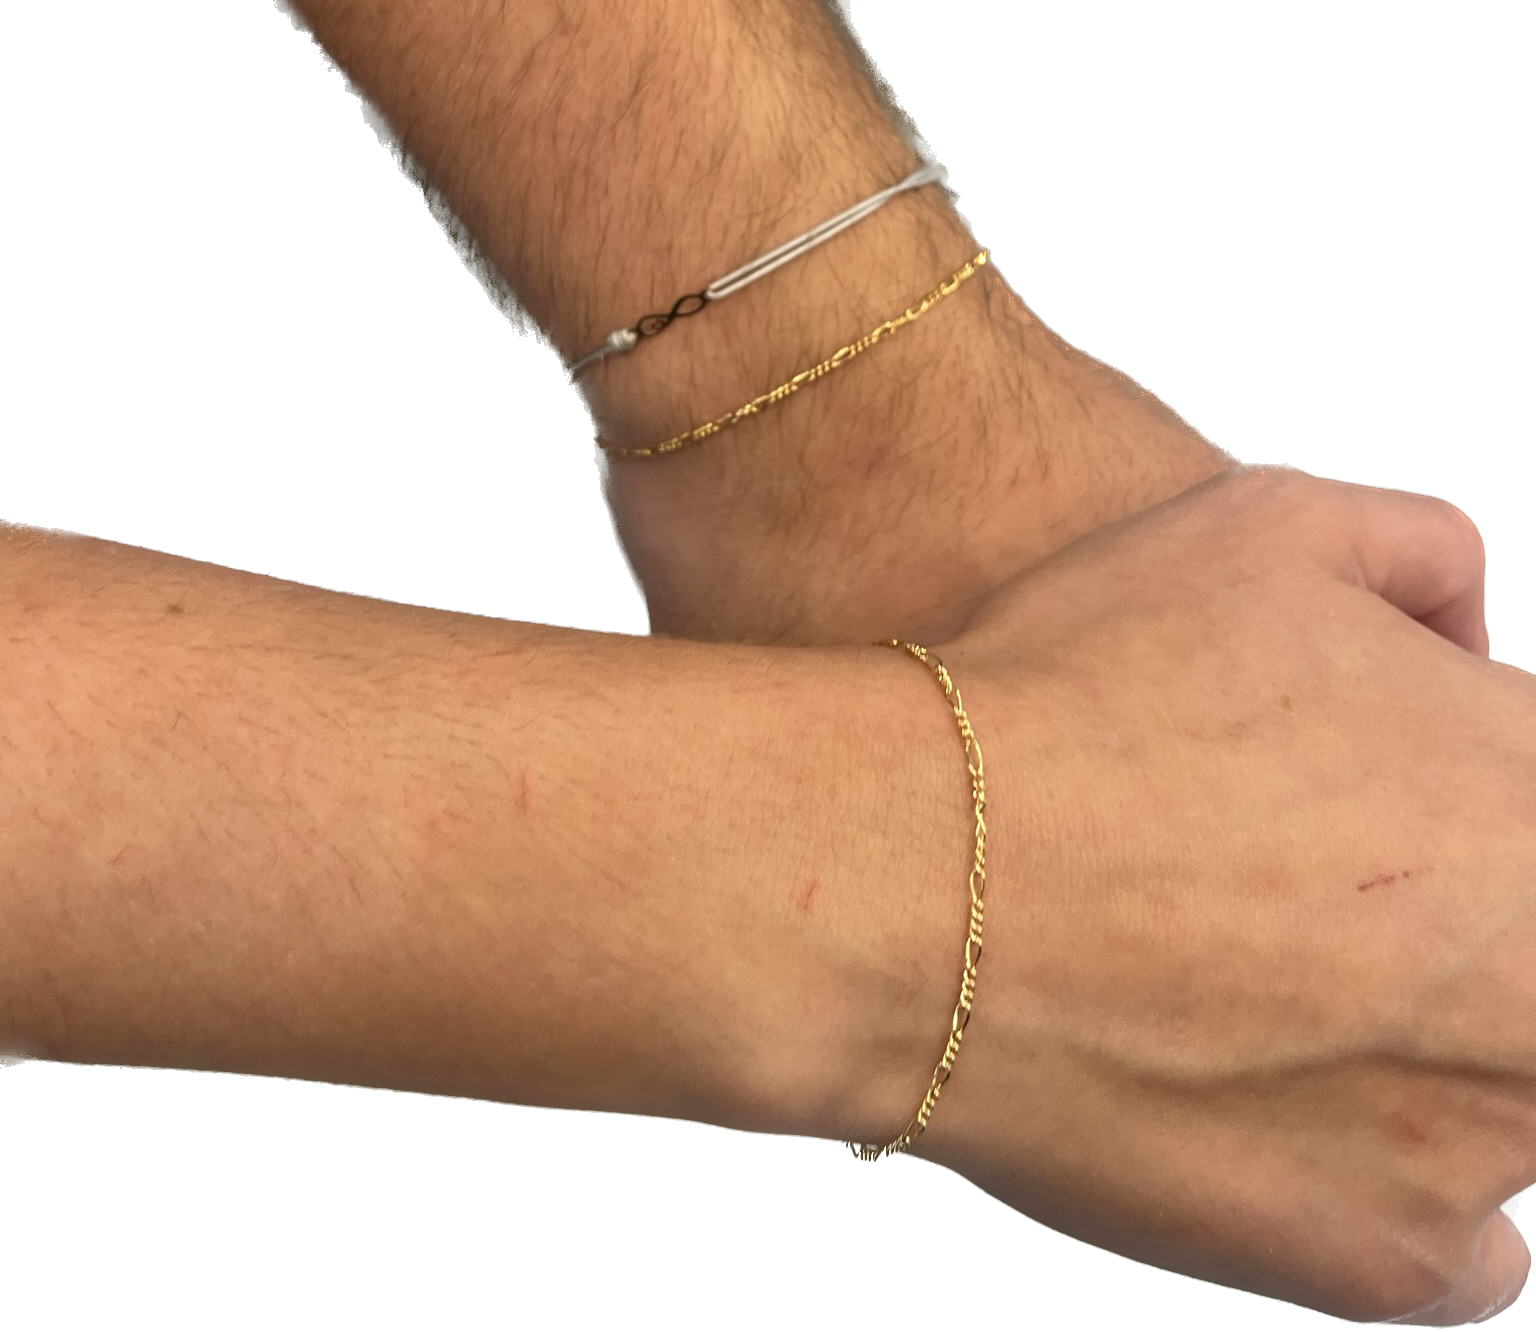 woman wearing gold bracelet